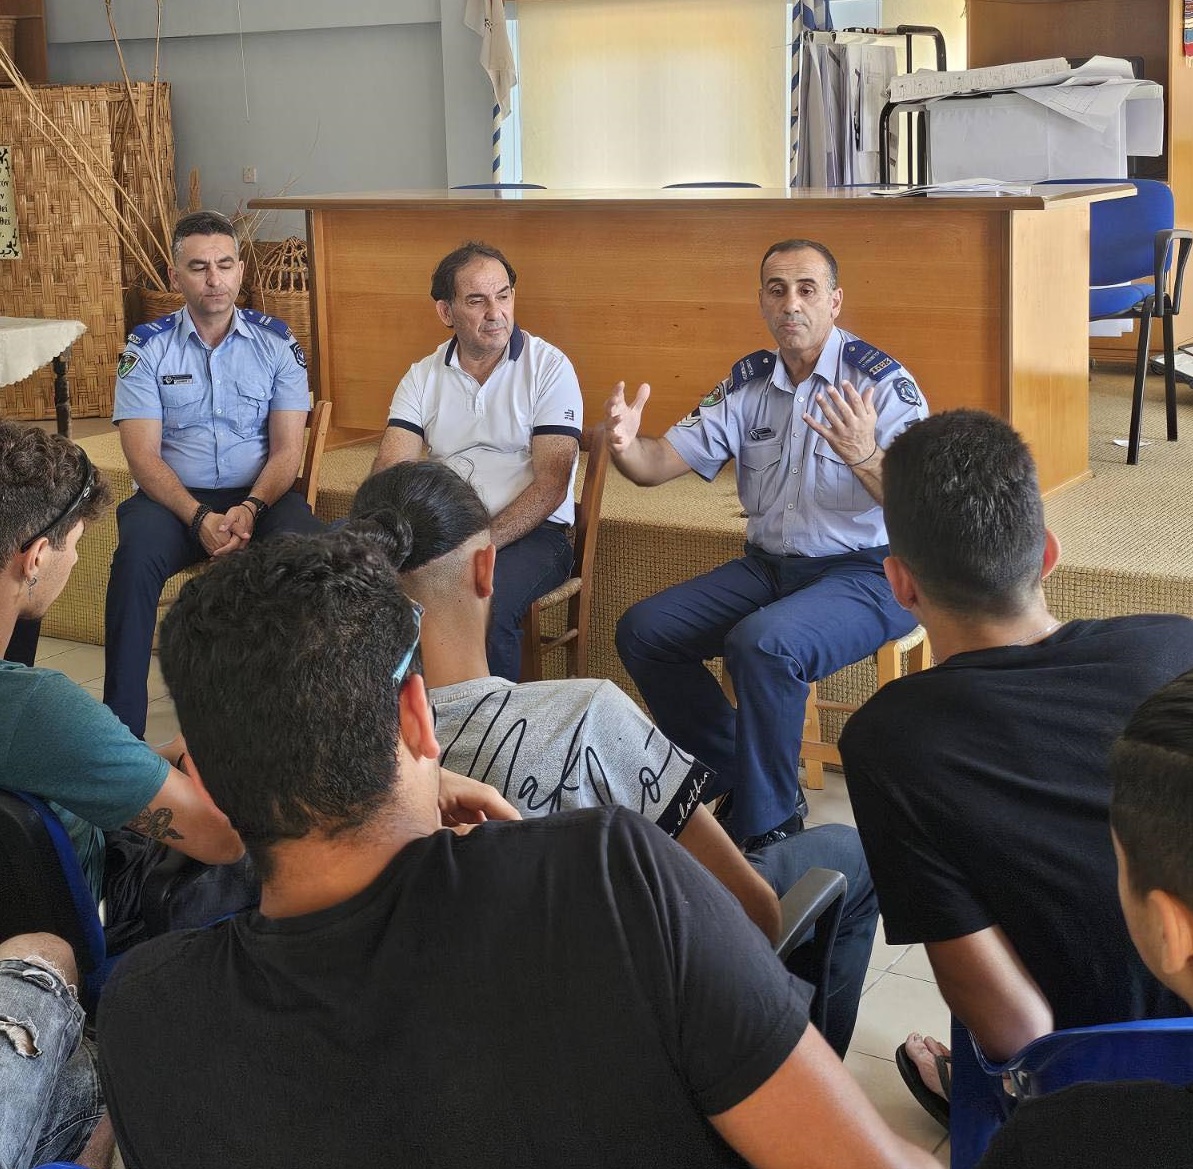 Συνεχίζεται η εκστρατεία ενημέρωσης της @Cyprus_Police για την επικινδυνότητα των κροτίδων. Μέλη της Κοινοτικής Αστυνόμευσης της ΑΔΕ Αμμοχώστου ενημέρωσαν σήμερα τους νέους της κοινότητας Λιοπετρίου, στέλνοντας το μήνυμα #ΜακριάΑπόΚροτίδες.